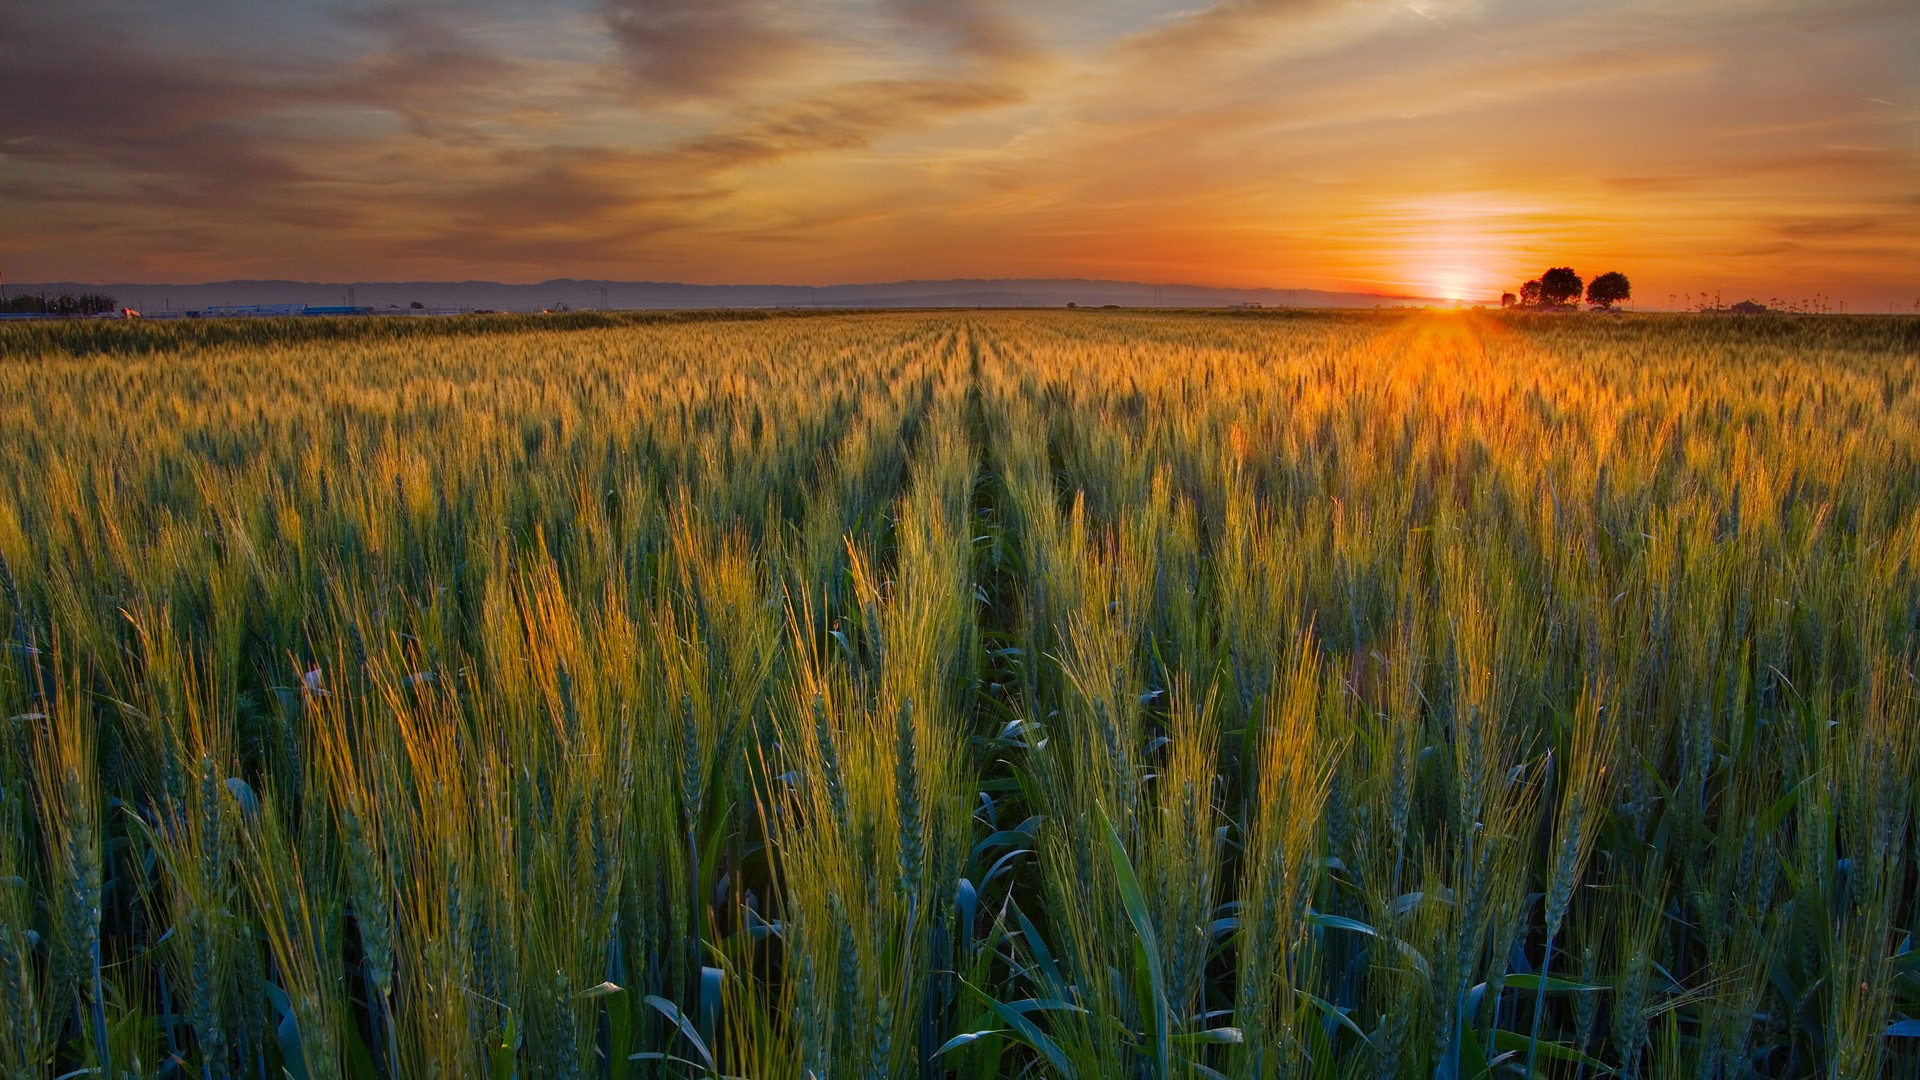 Wallpaper - Wheat Field In The Sunset - HD Wallpaper 